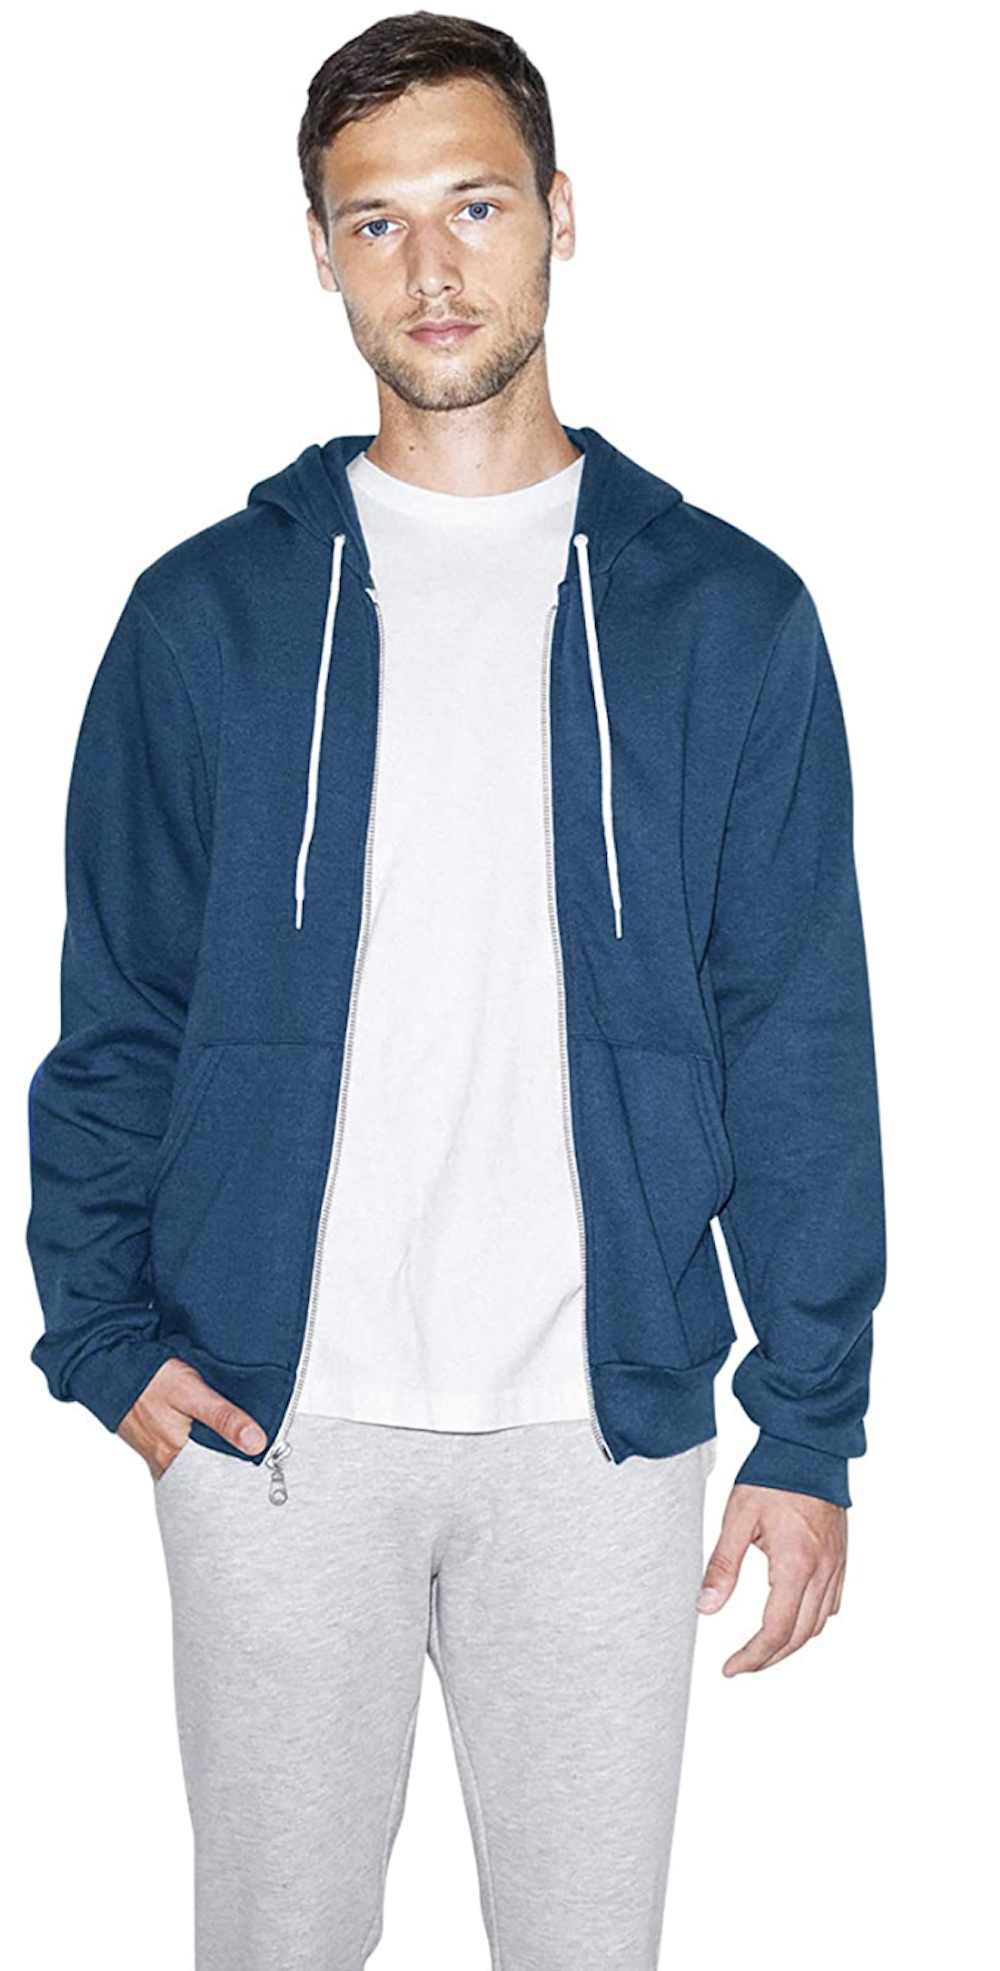 American Apprel hoodie